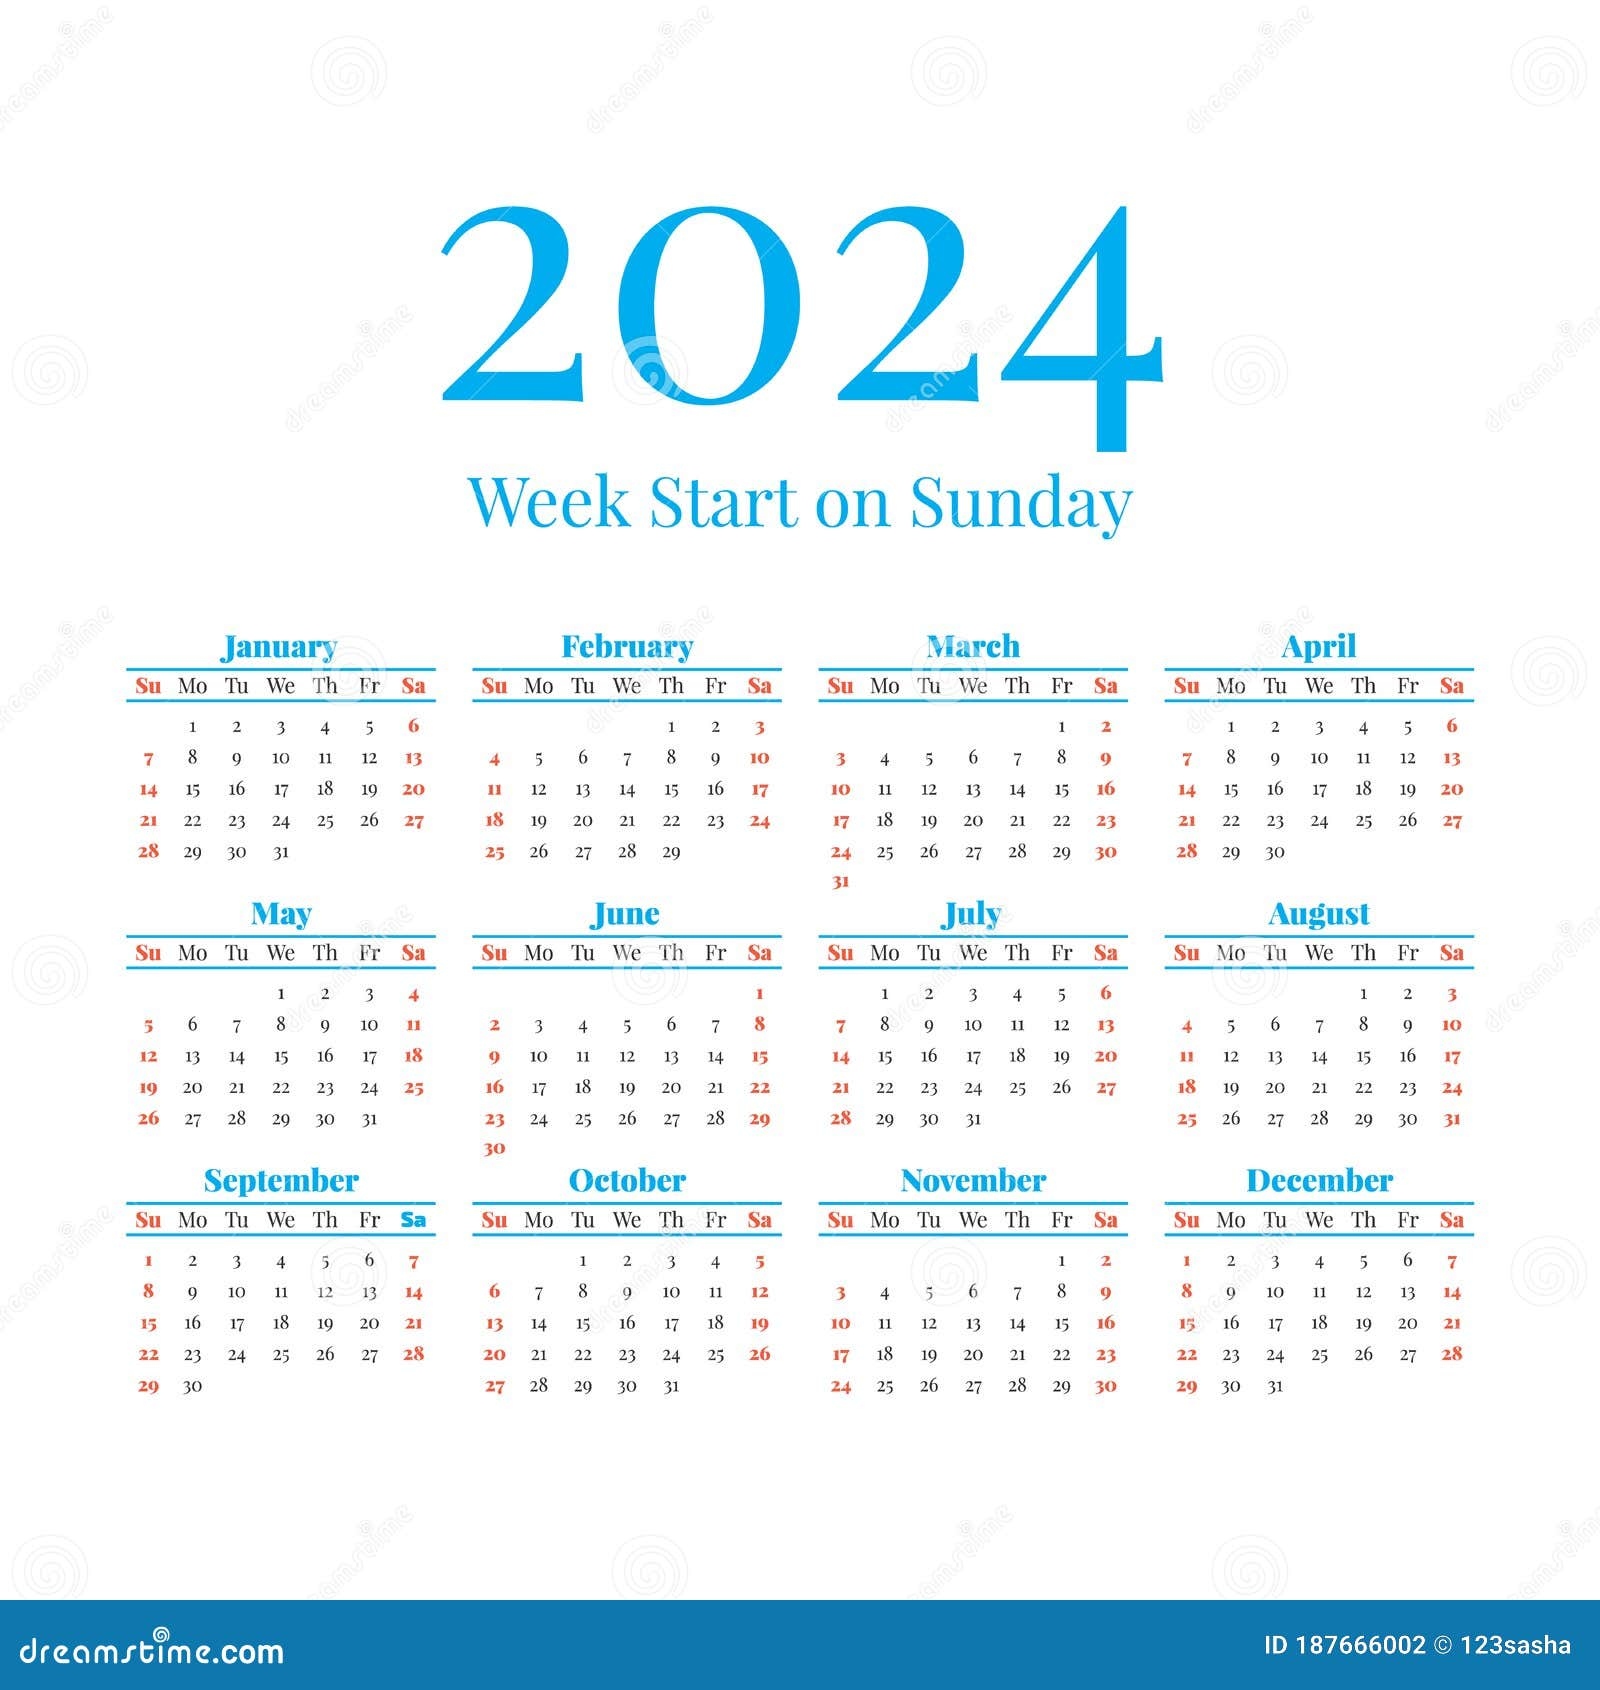 2024 Year Calendar Excel Calendar 2024 Ireland Printable - Free Printable 2024 Monthly Calendar With Week Numbers